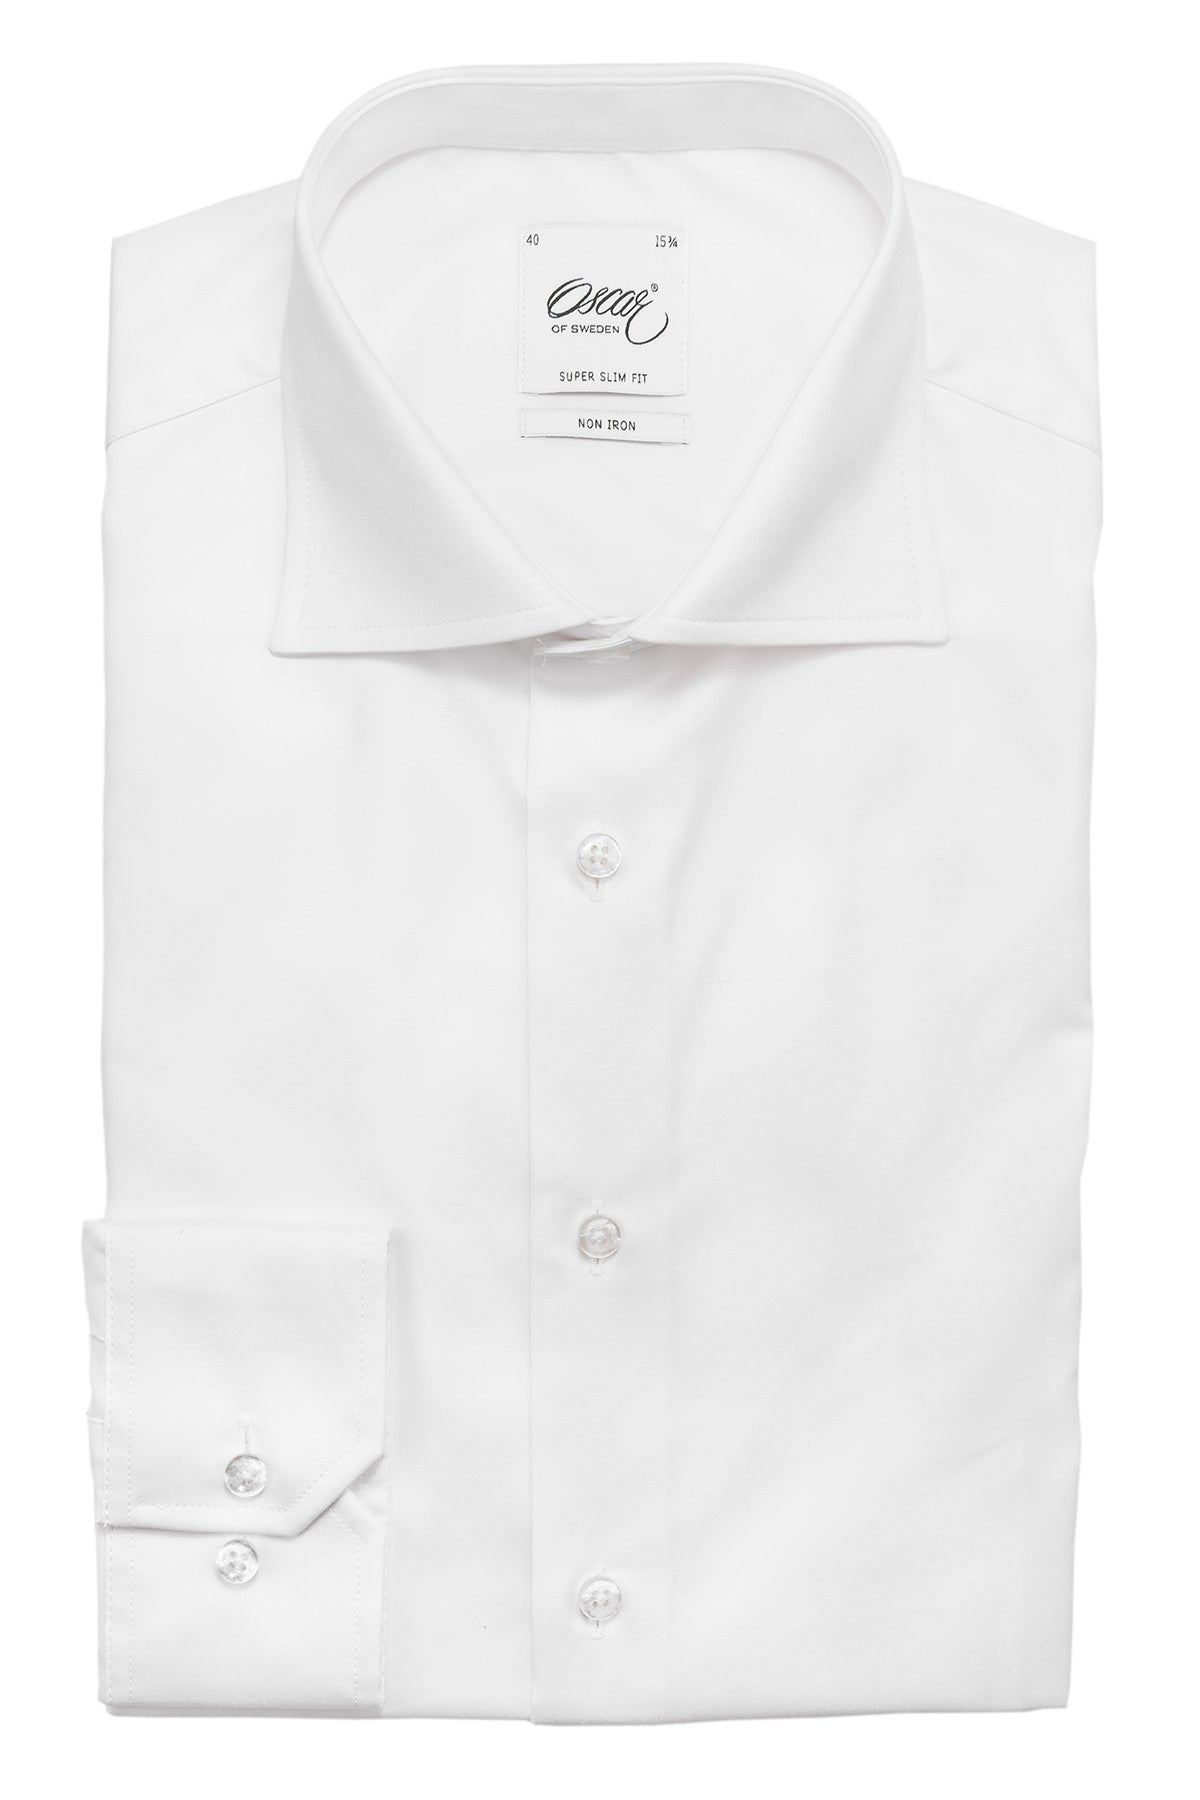 White non iron super slim fit shirt